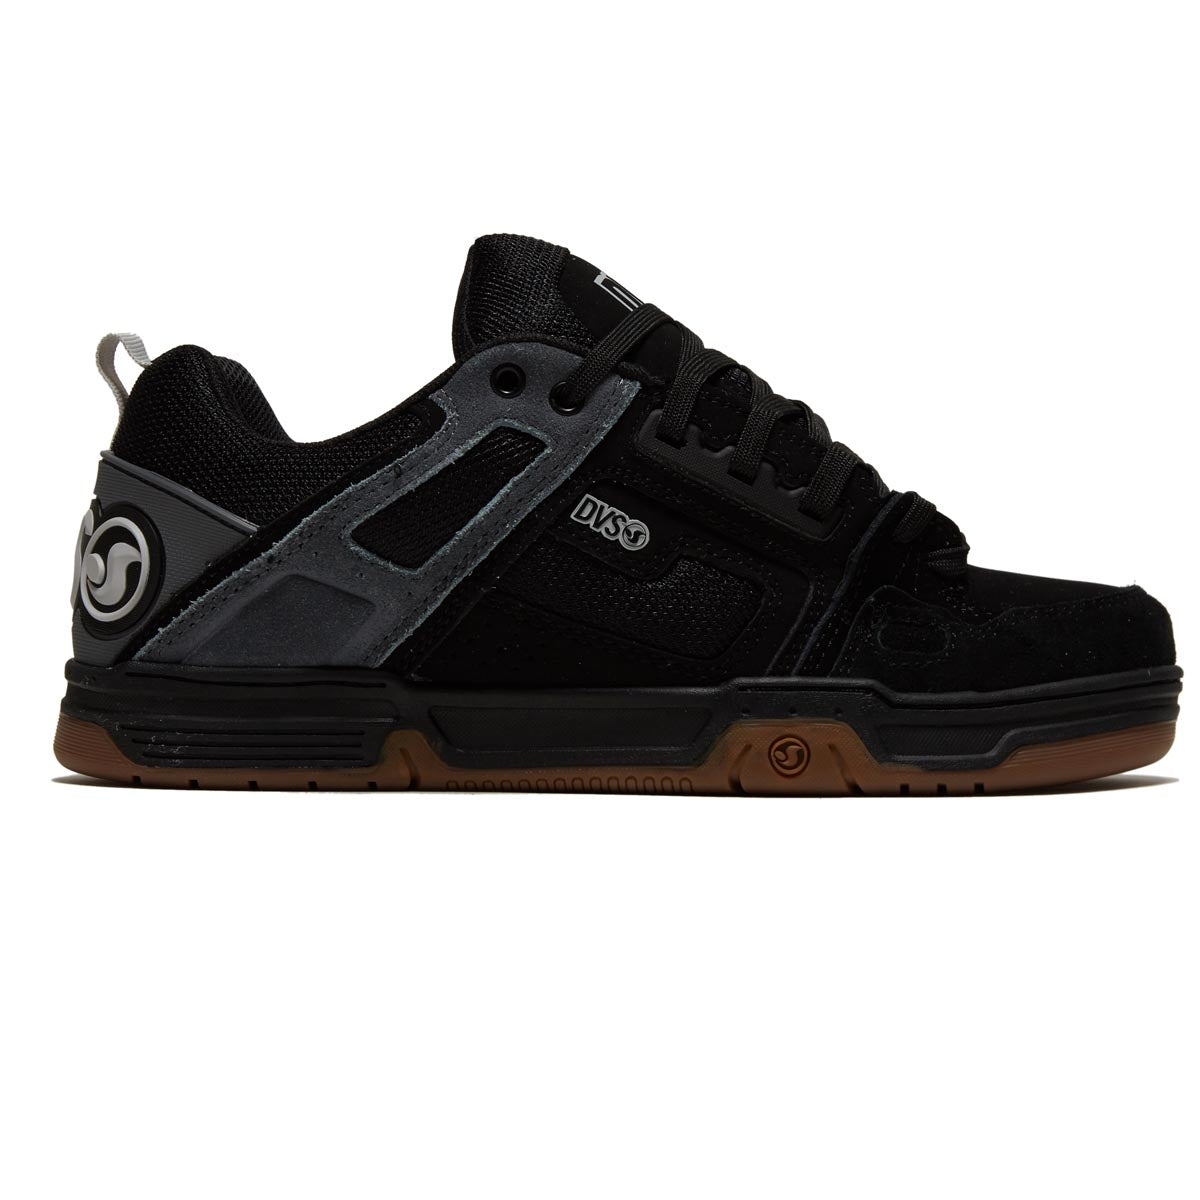 DVS Comanche Shoes - Black/Charcoal/Gray Suede image 1